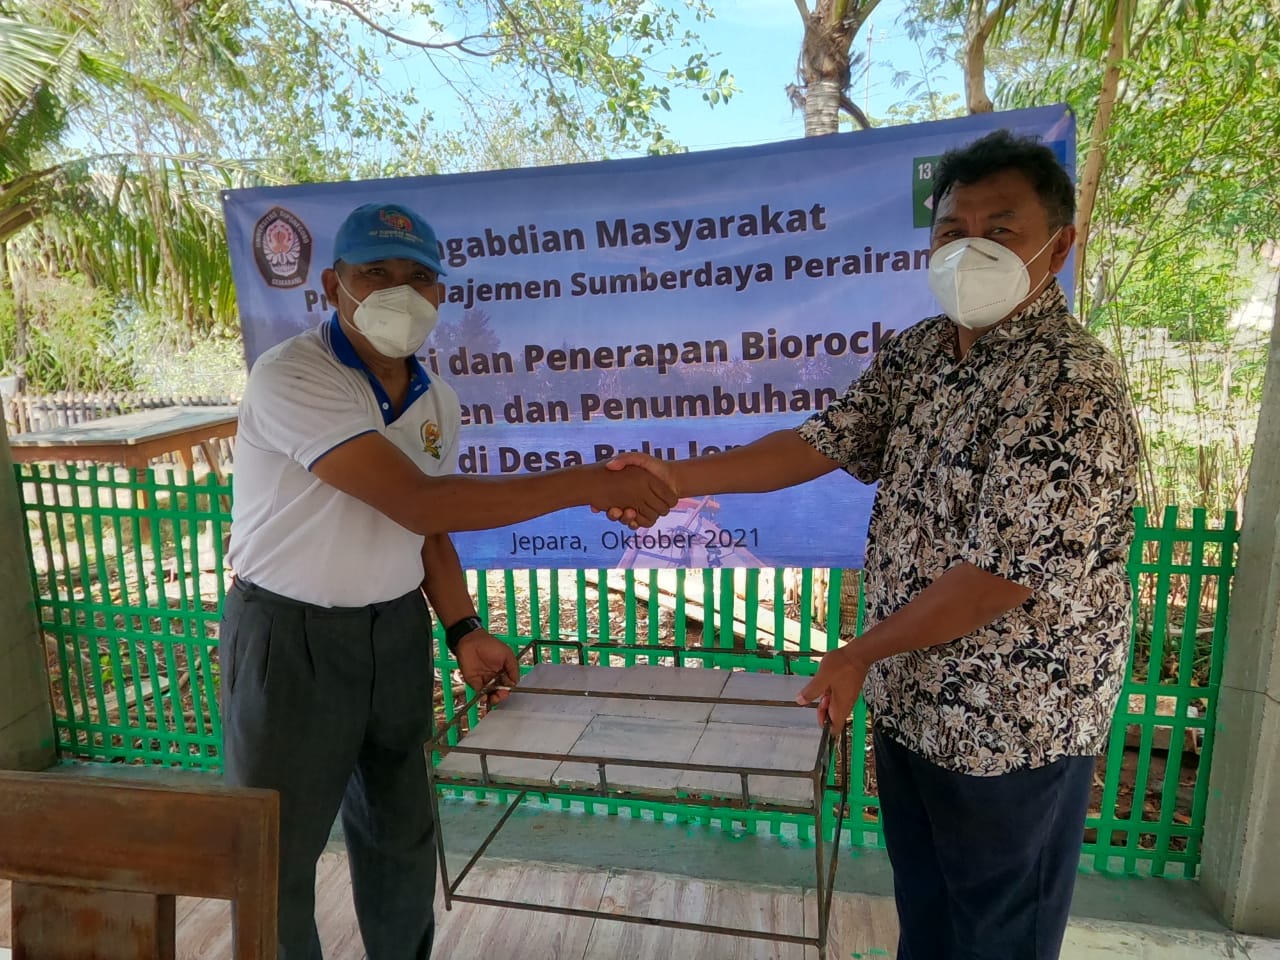 Pelestarian Karang Menurun! Dosen Prodi Manajemen Sumberdaya Perairan Mengenalkan Biorock Kepada Kelompok Nelayan di Jepara